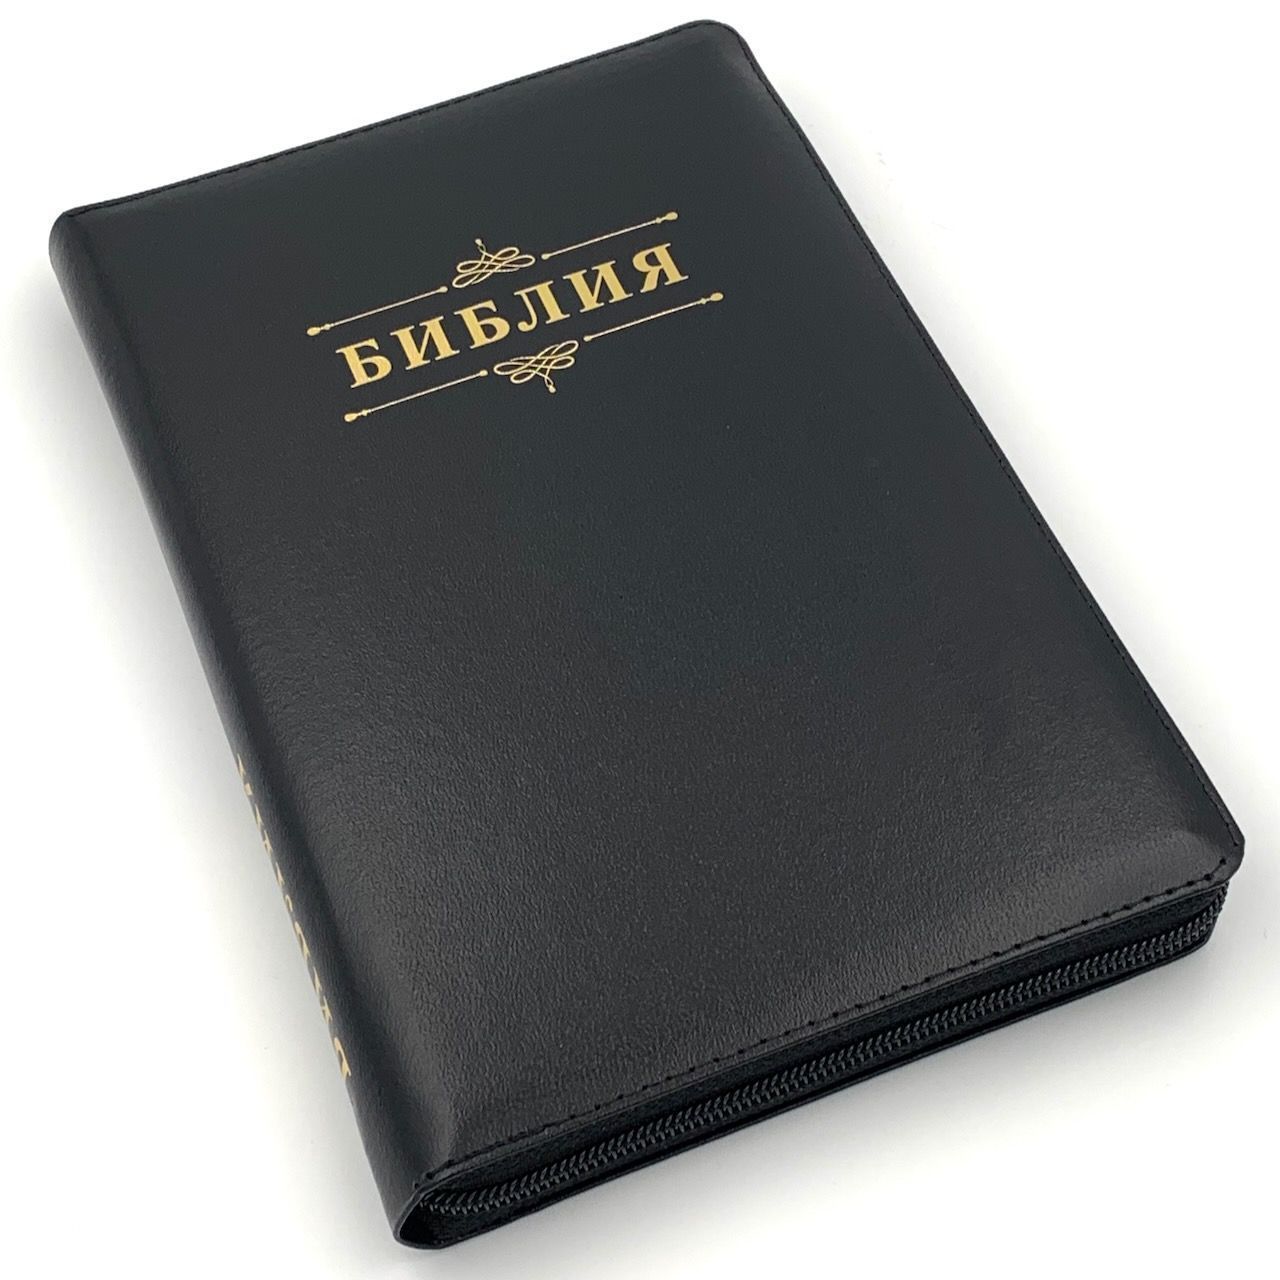 Библия 055zti код D3 дизайн "слово Библия", кожаный переплет на молнии с индексами, цвет черный, средний формат, 143*220 мм, параллельные места по центру страницы, белые страницы, золотой обрез